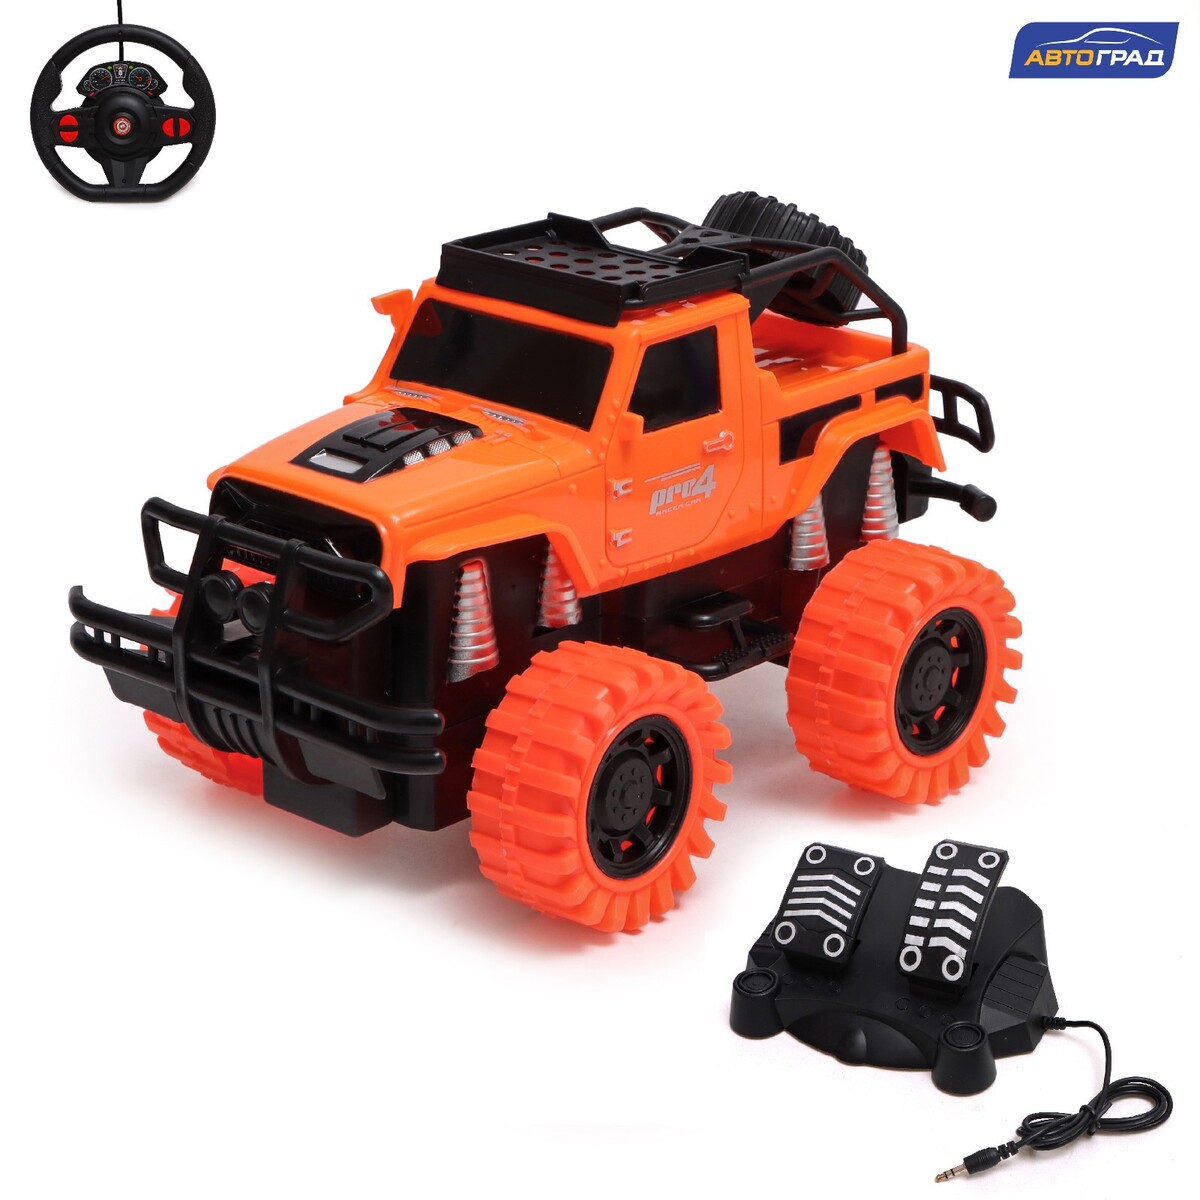 Джип радиоуправляемый truck, педали и руль, работает от аккумулятора, цвет оранжевый джип радиоуправляемый drift 4wd дрифт работает от аккумулятора оранжевый